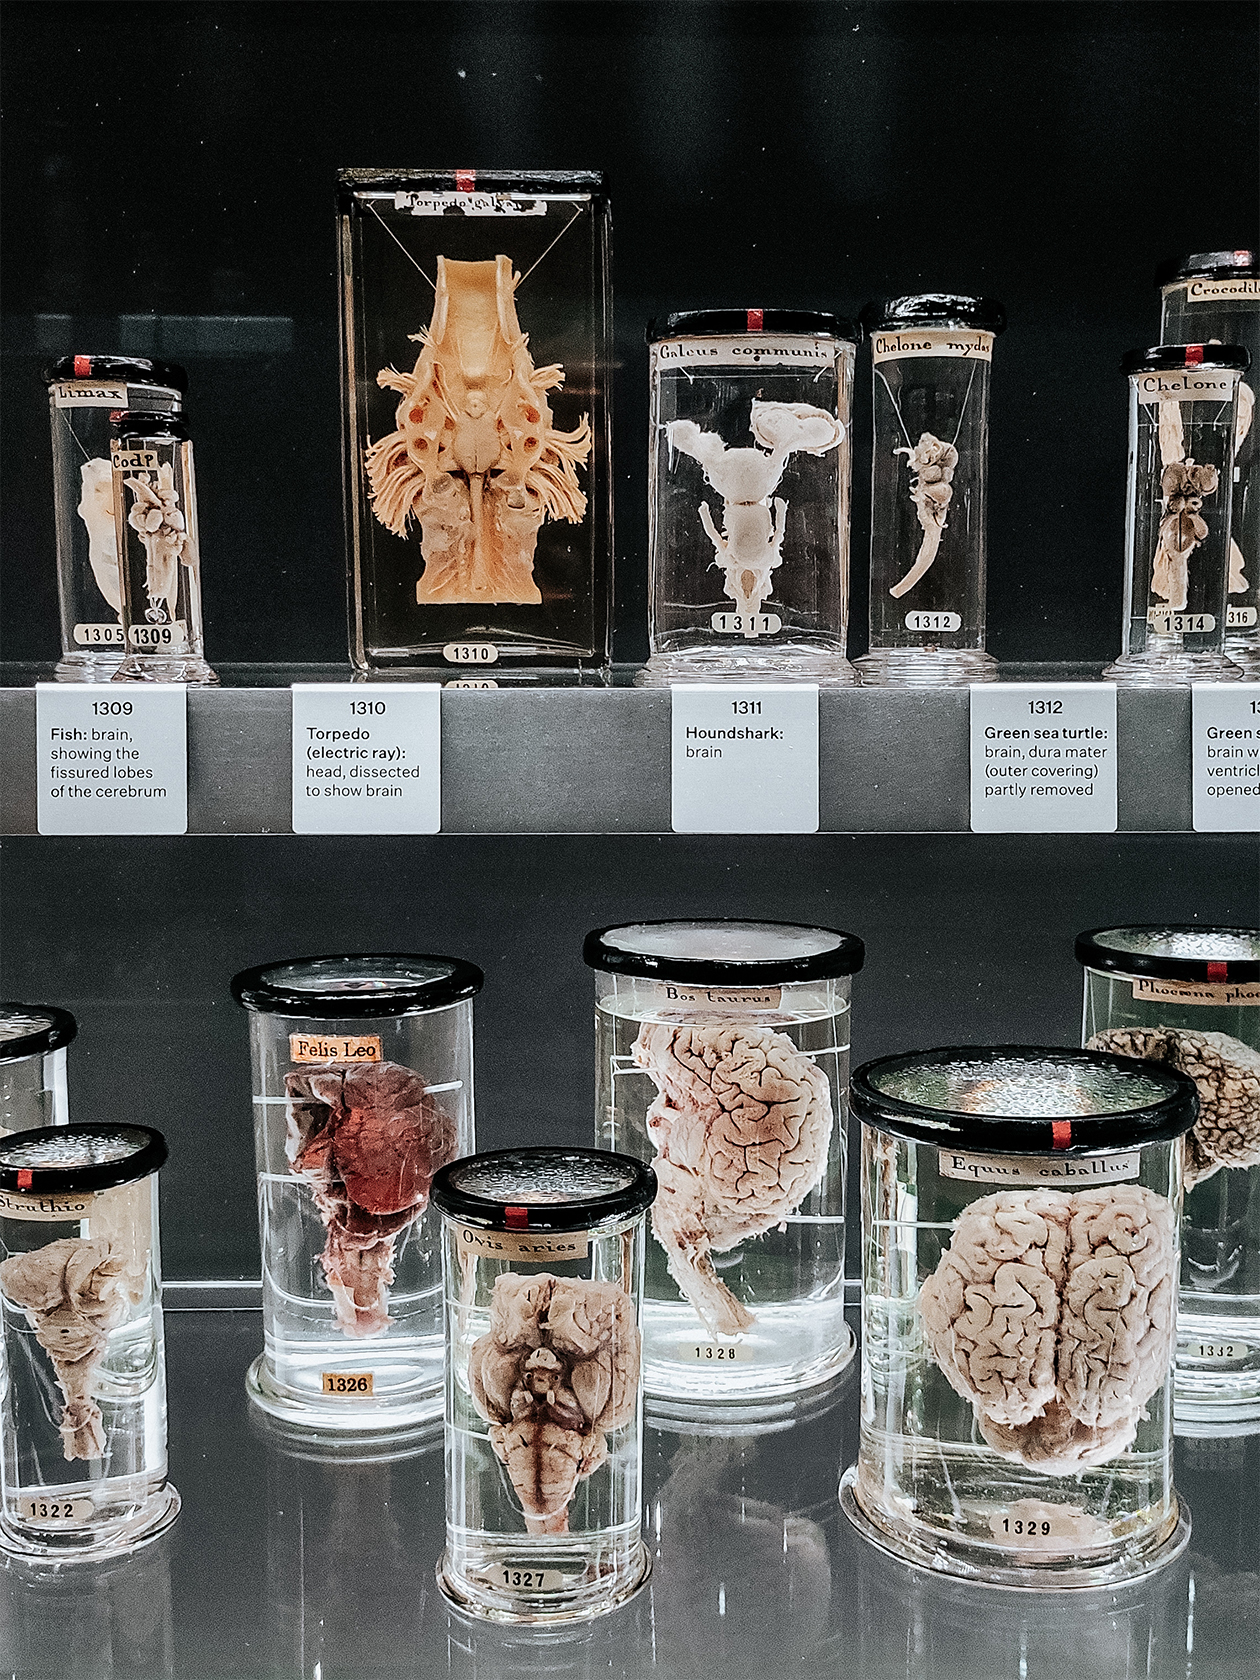 Музей просит не публиковать фото человеческих препаратов, так что смотрите на мозги разных зверюшек в баночках